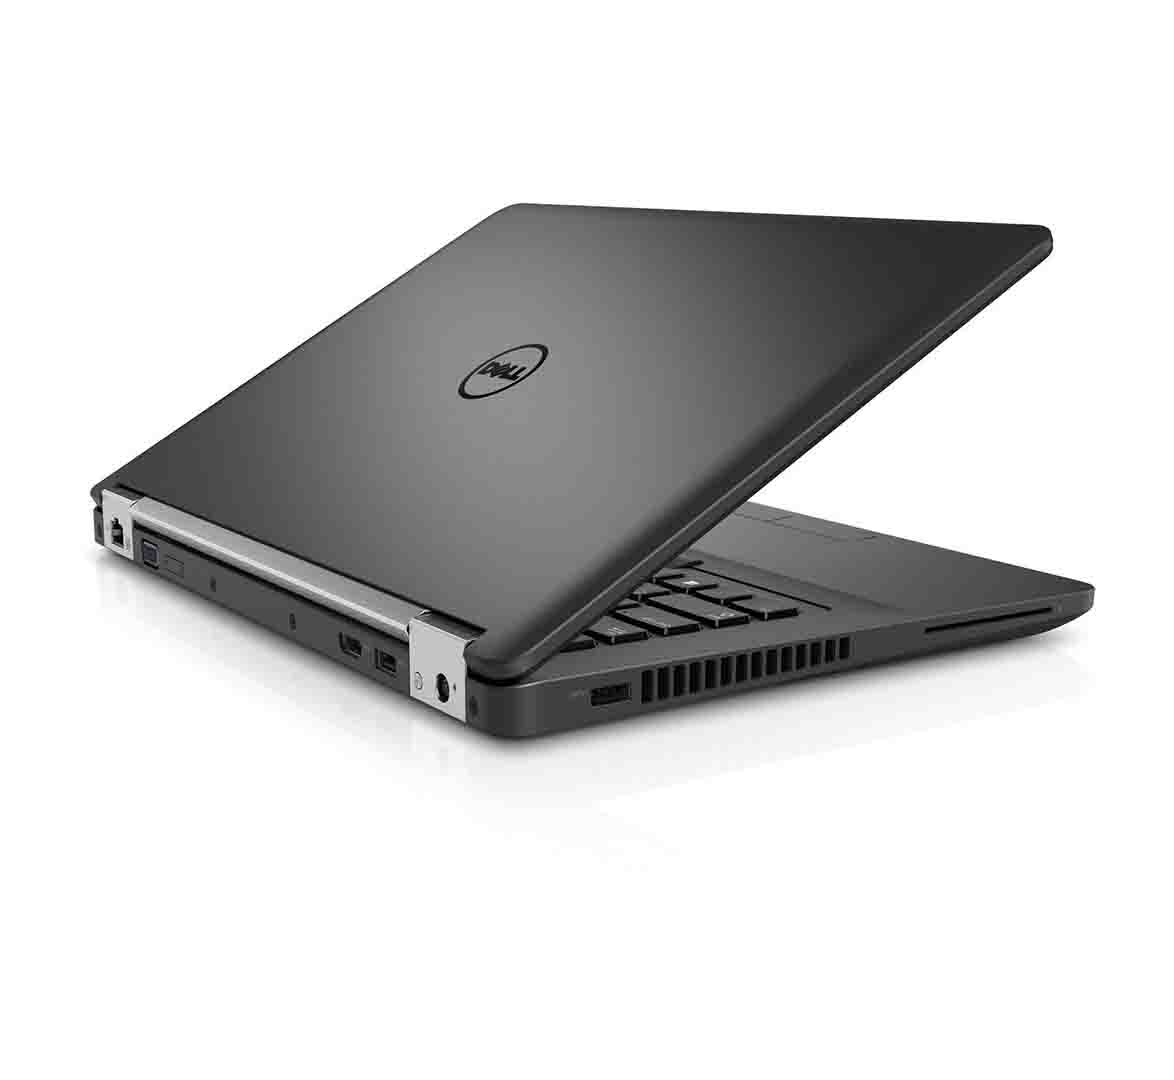 Dell Latitude e5450 Business Laptop, Intel Core i5-5th Gen. CPU, 8GB RAM, 256GB SSD, 14.1 inch Display, Windows 10 Pro